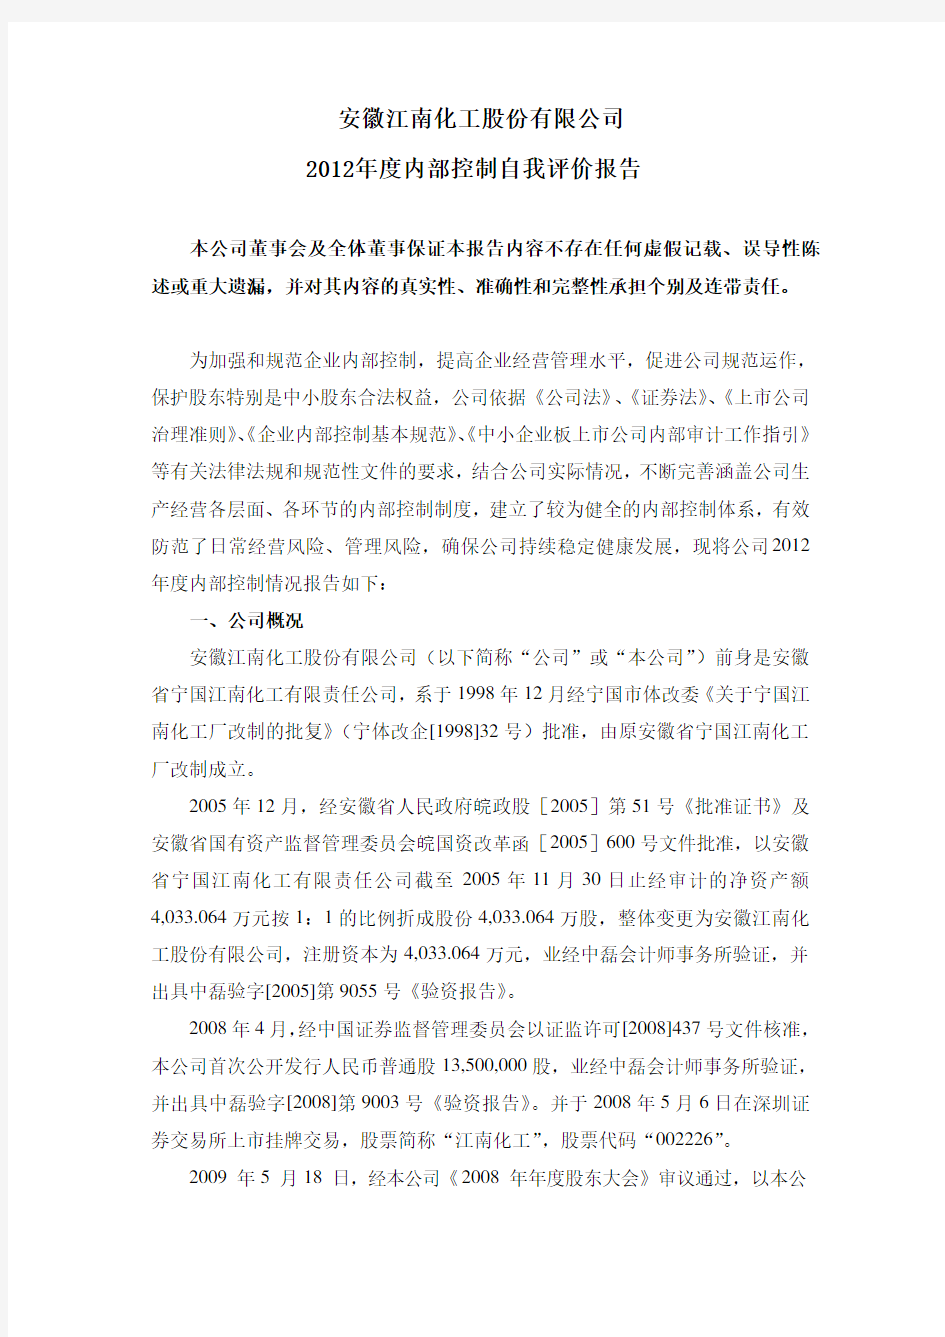 安徽江南化工股份有限公司 2012年度内部控制自我评价报告